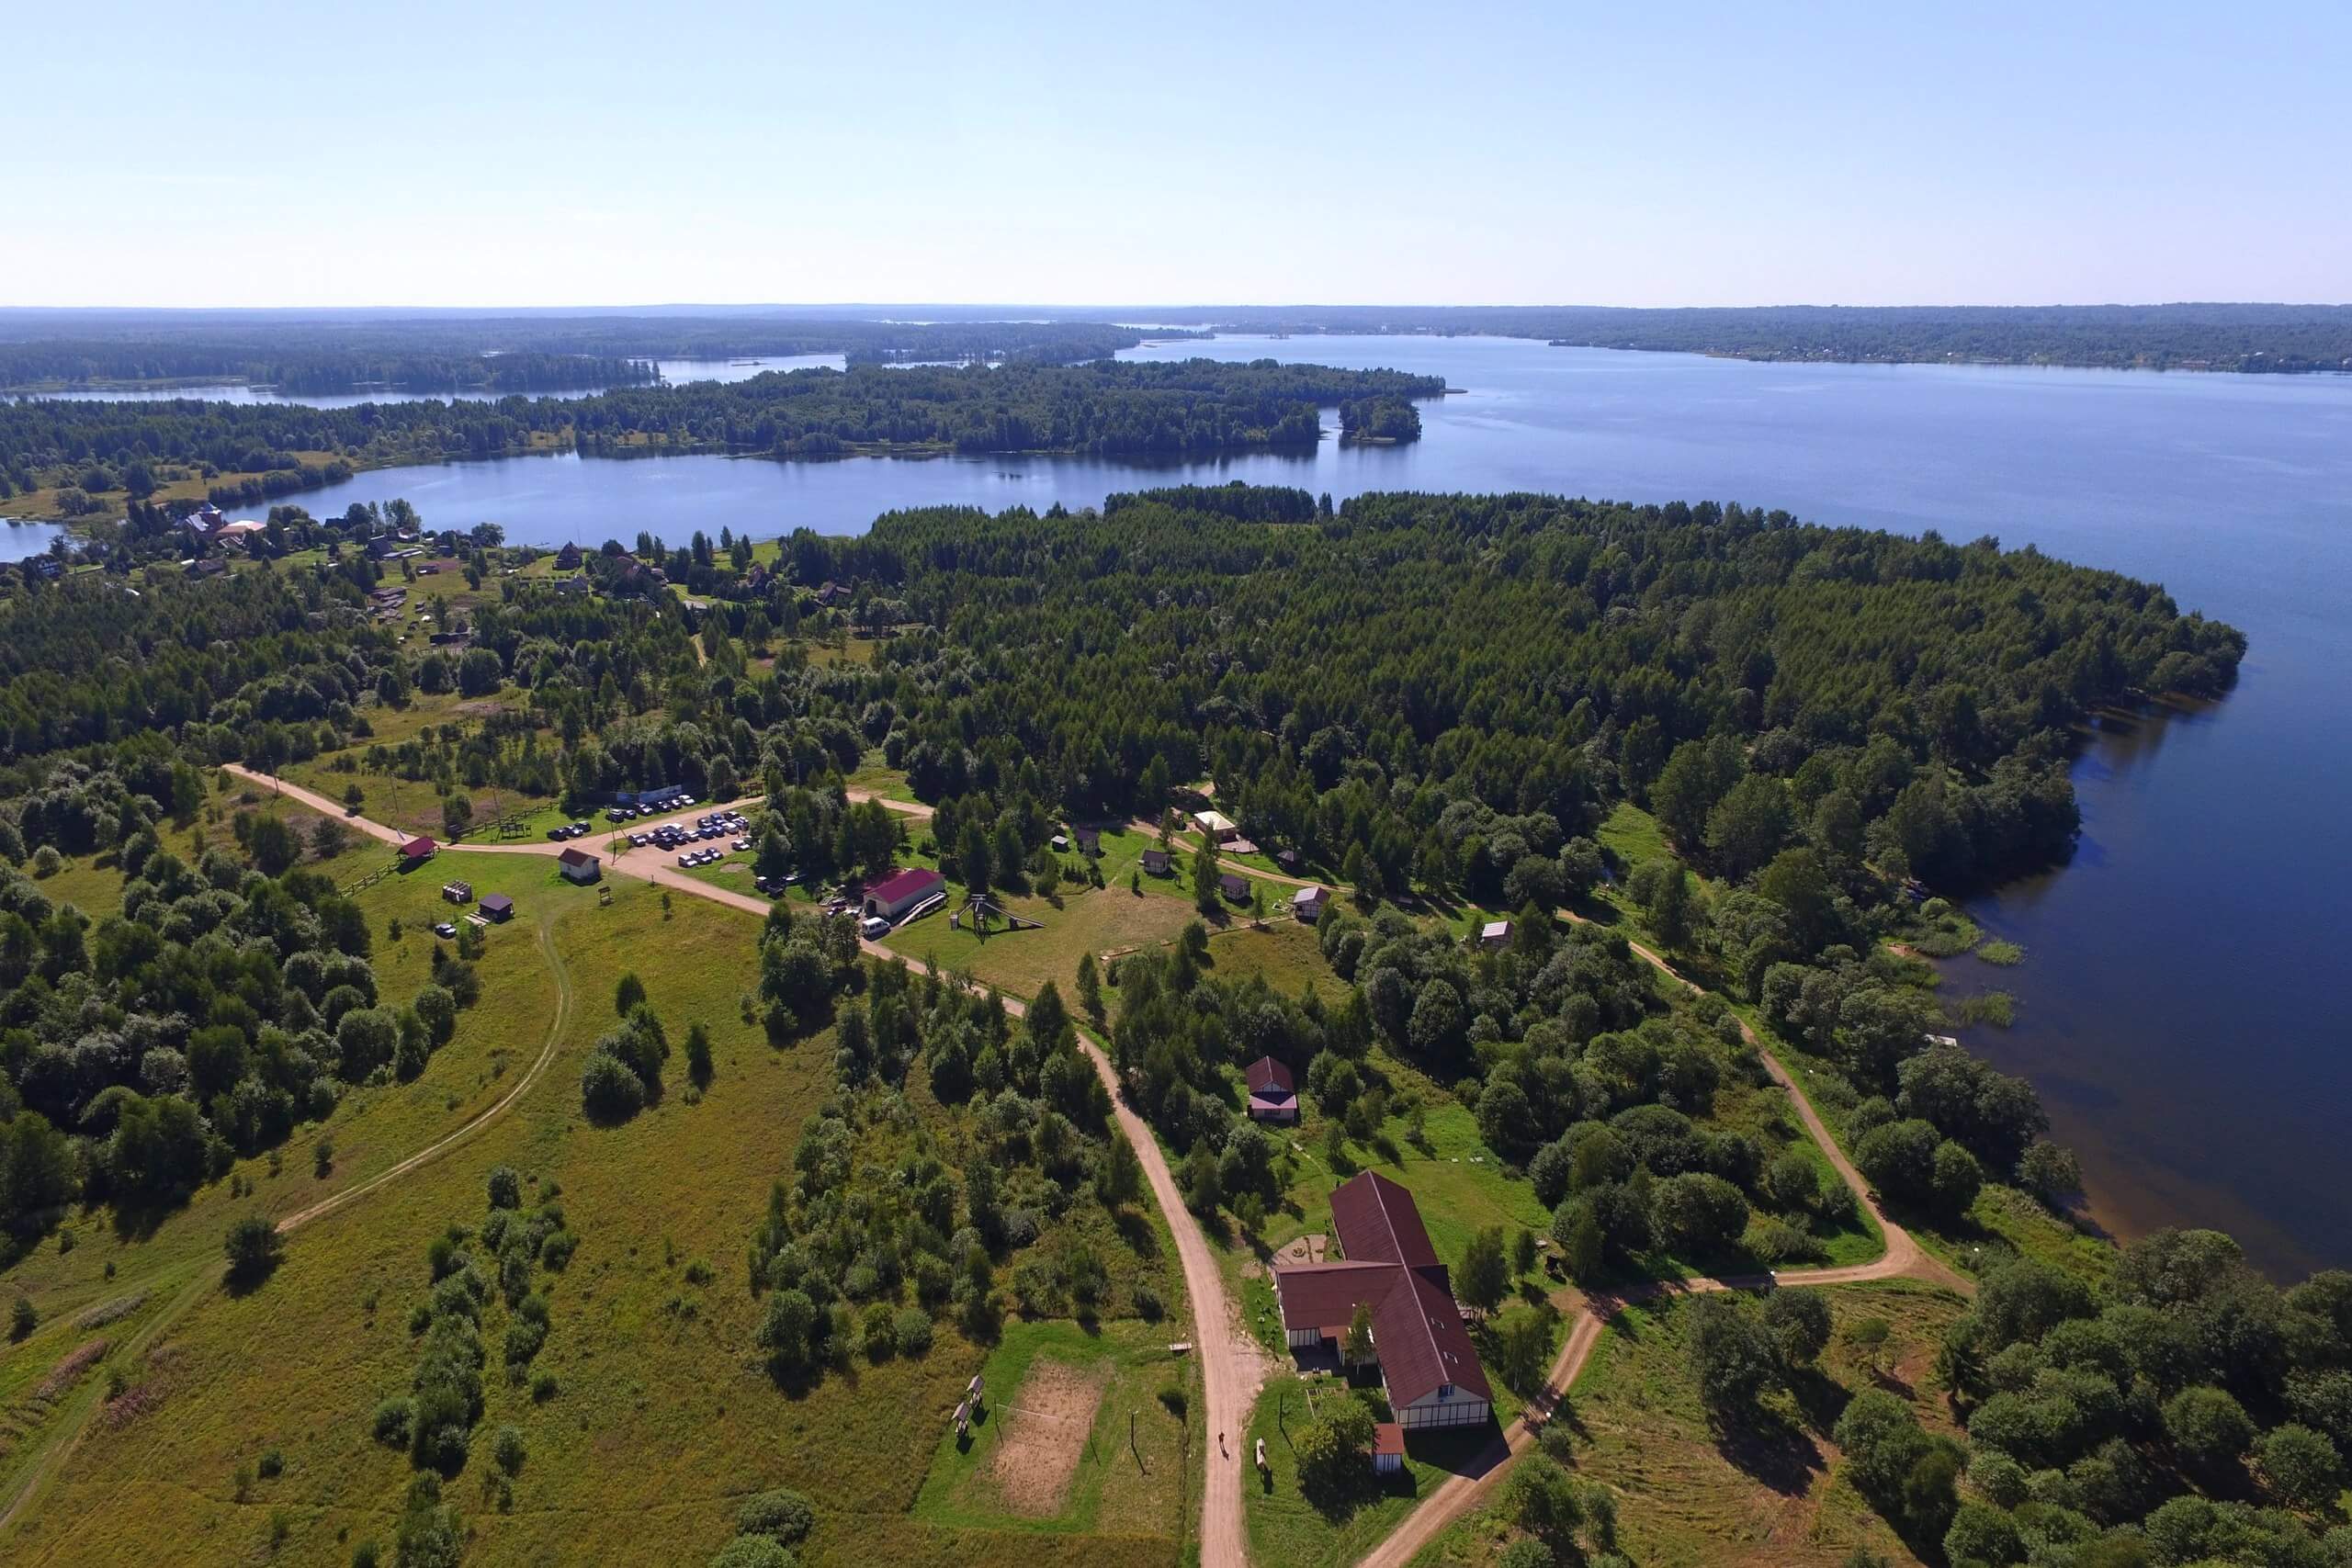 Панорамный вид на территорию базы отдыха. Лес и озеро.